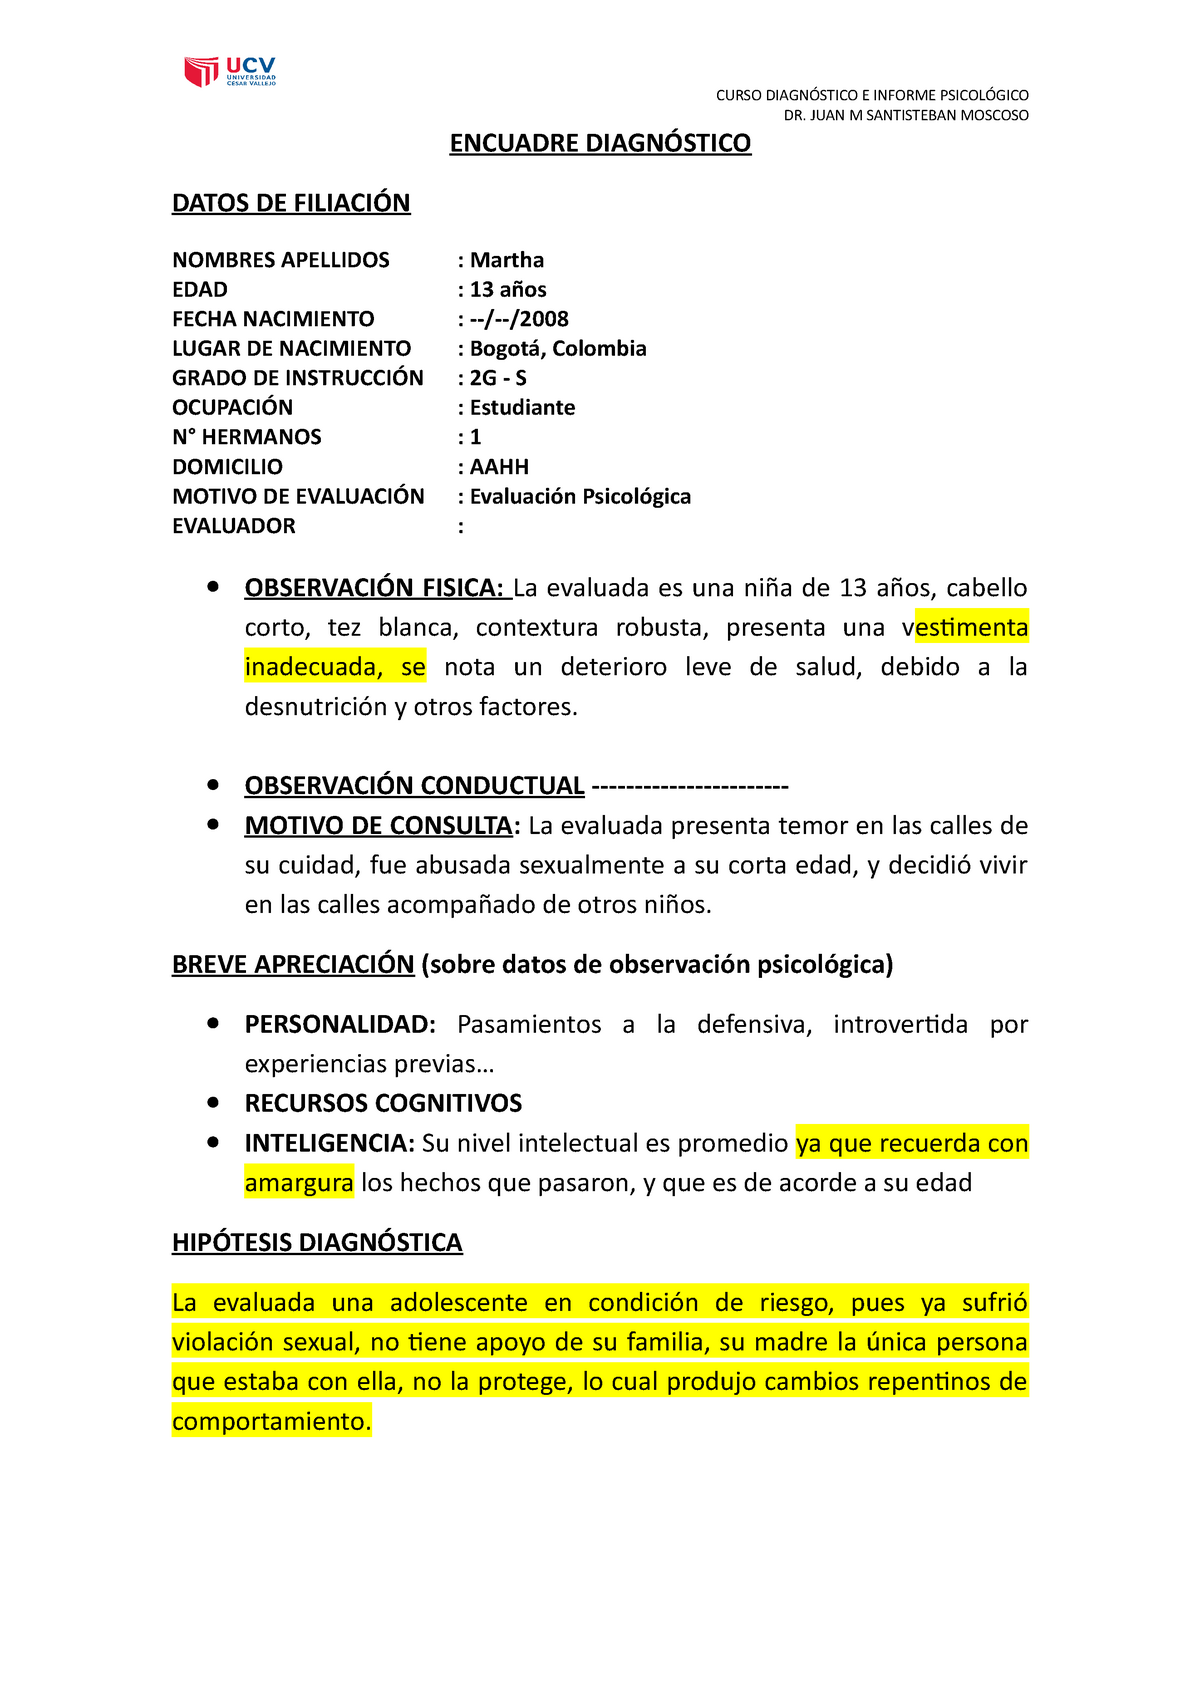 Encuadre Diagnostico CASO Marta Grupo 1 - CURSO DIAGNÓSTICO E INFORME  PSICOLÓGICO DR. JUAN M - Studocu